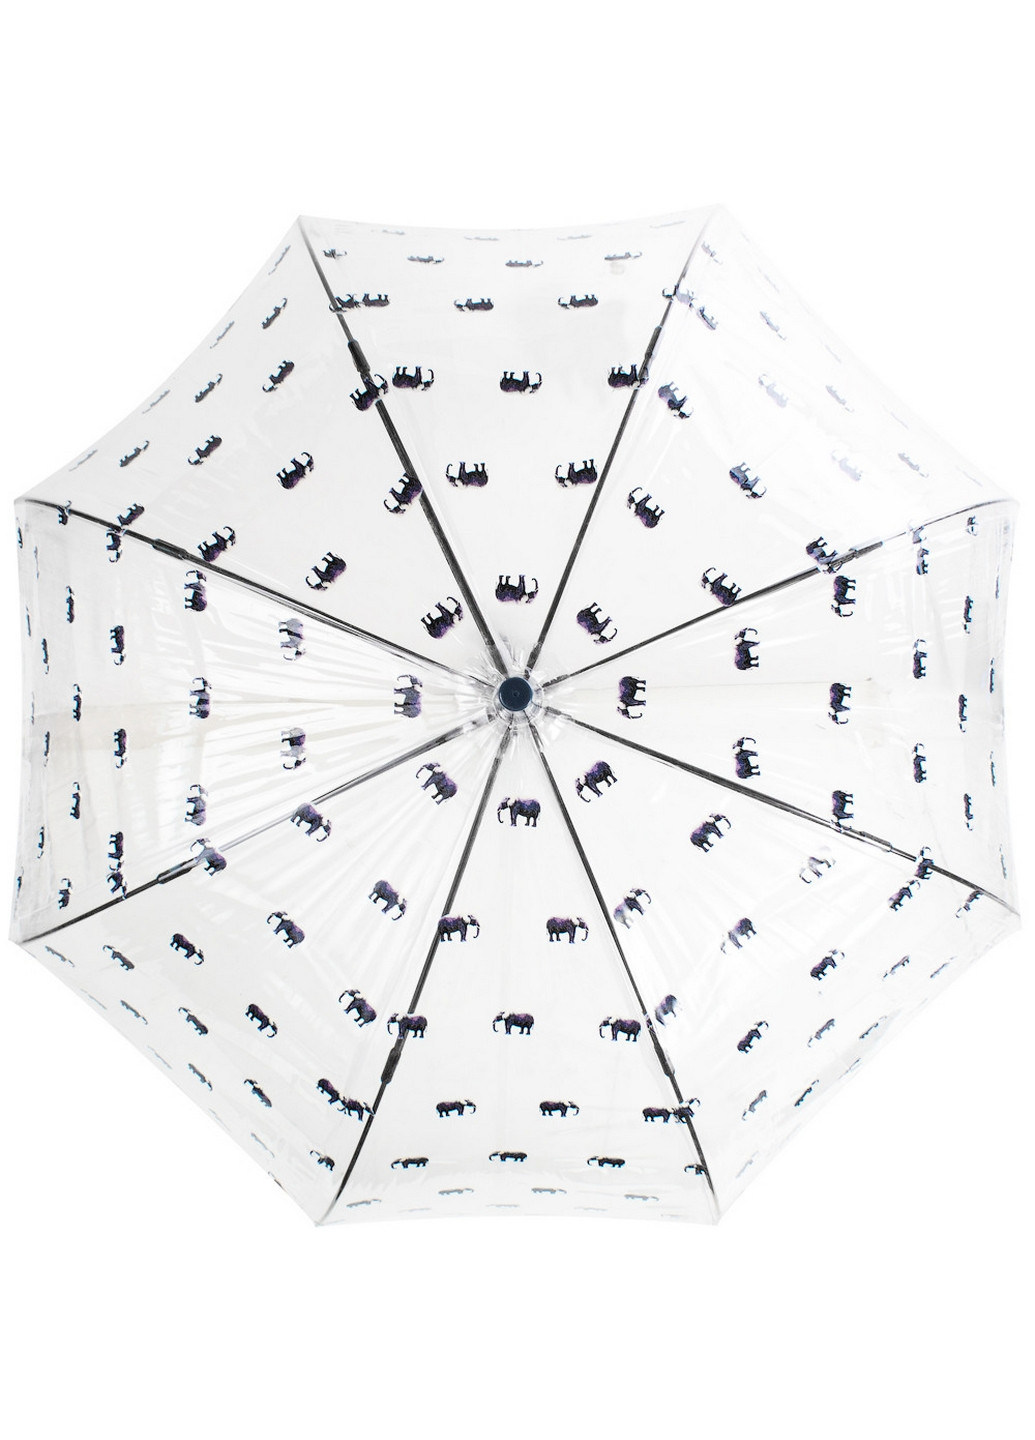 Женский зонт-трость механический 84 см Fulton (260330769)